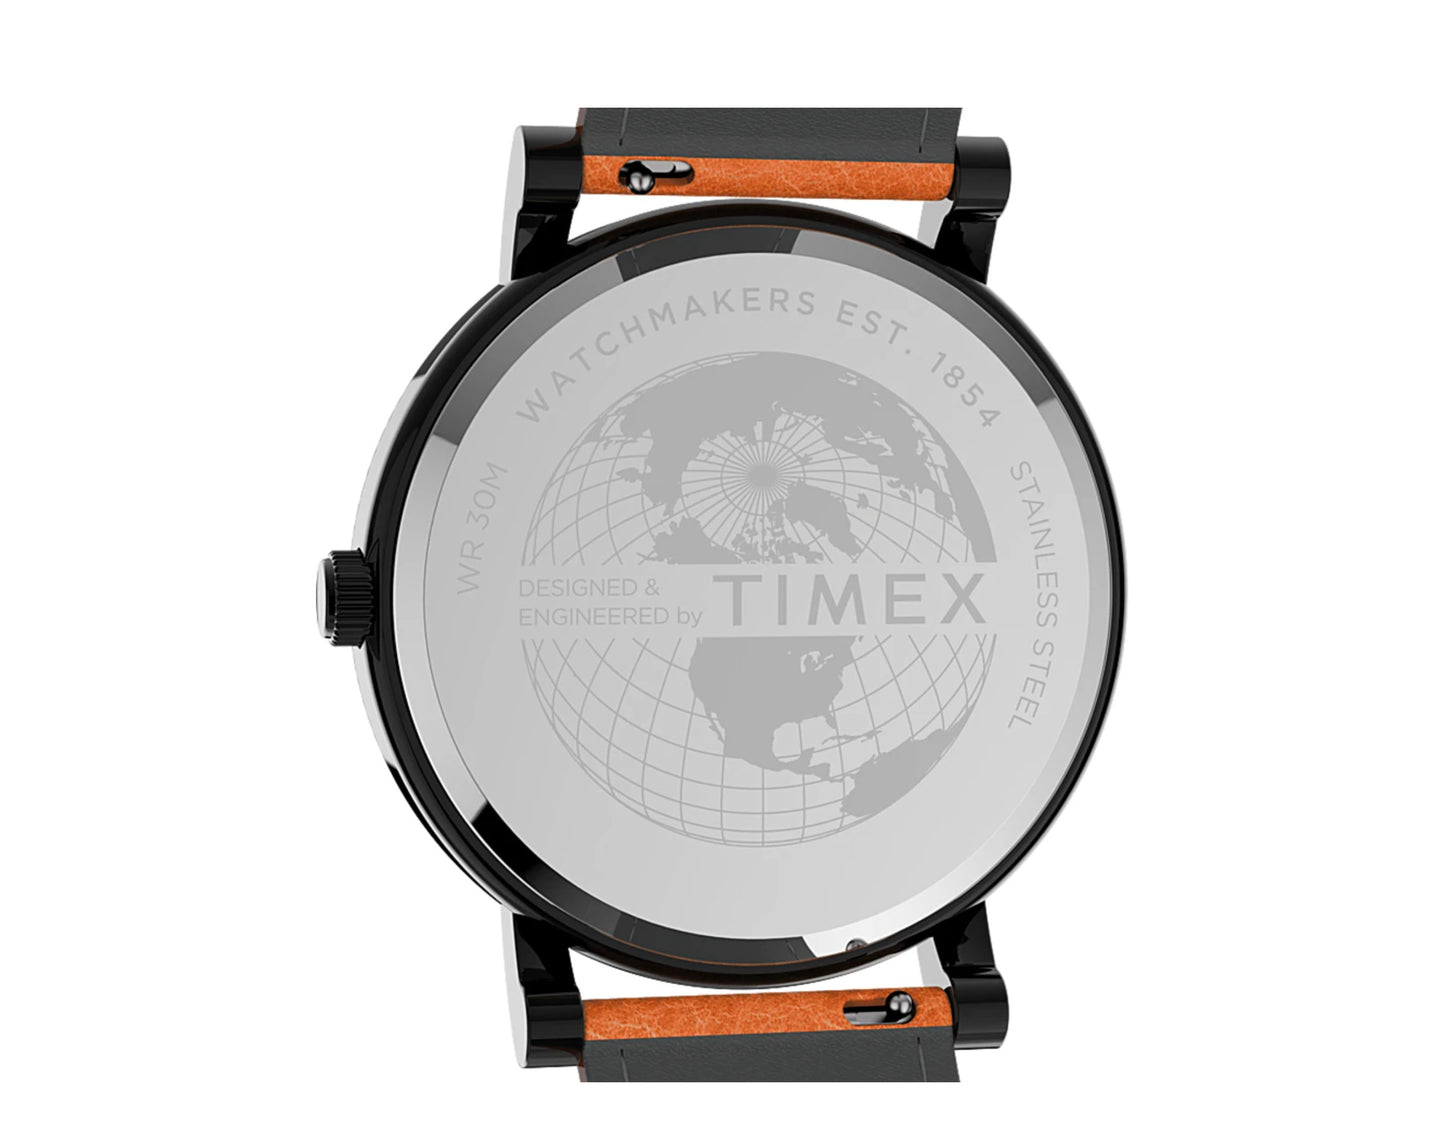 Timex Originals 42mm Leather Strap Watch